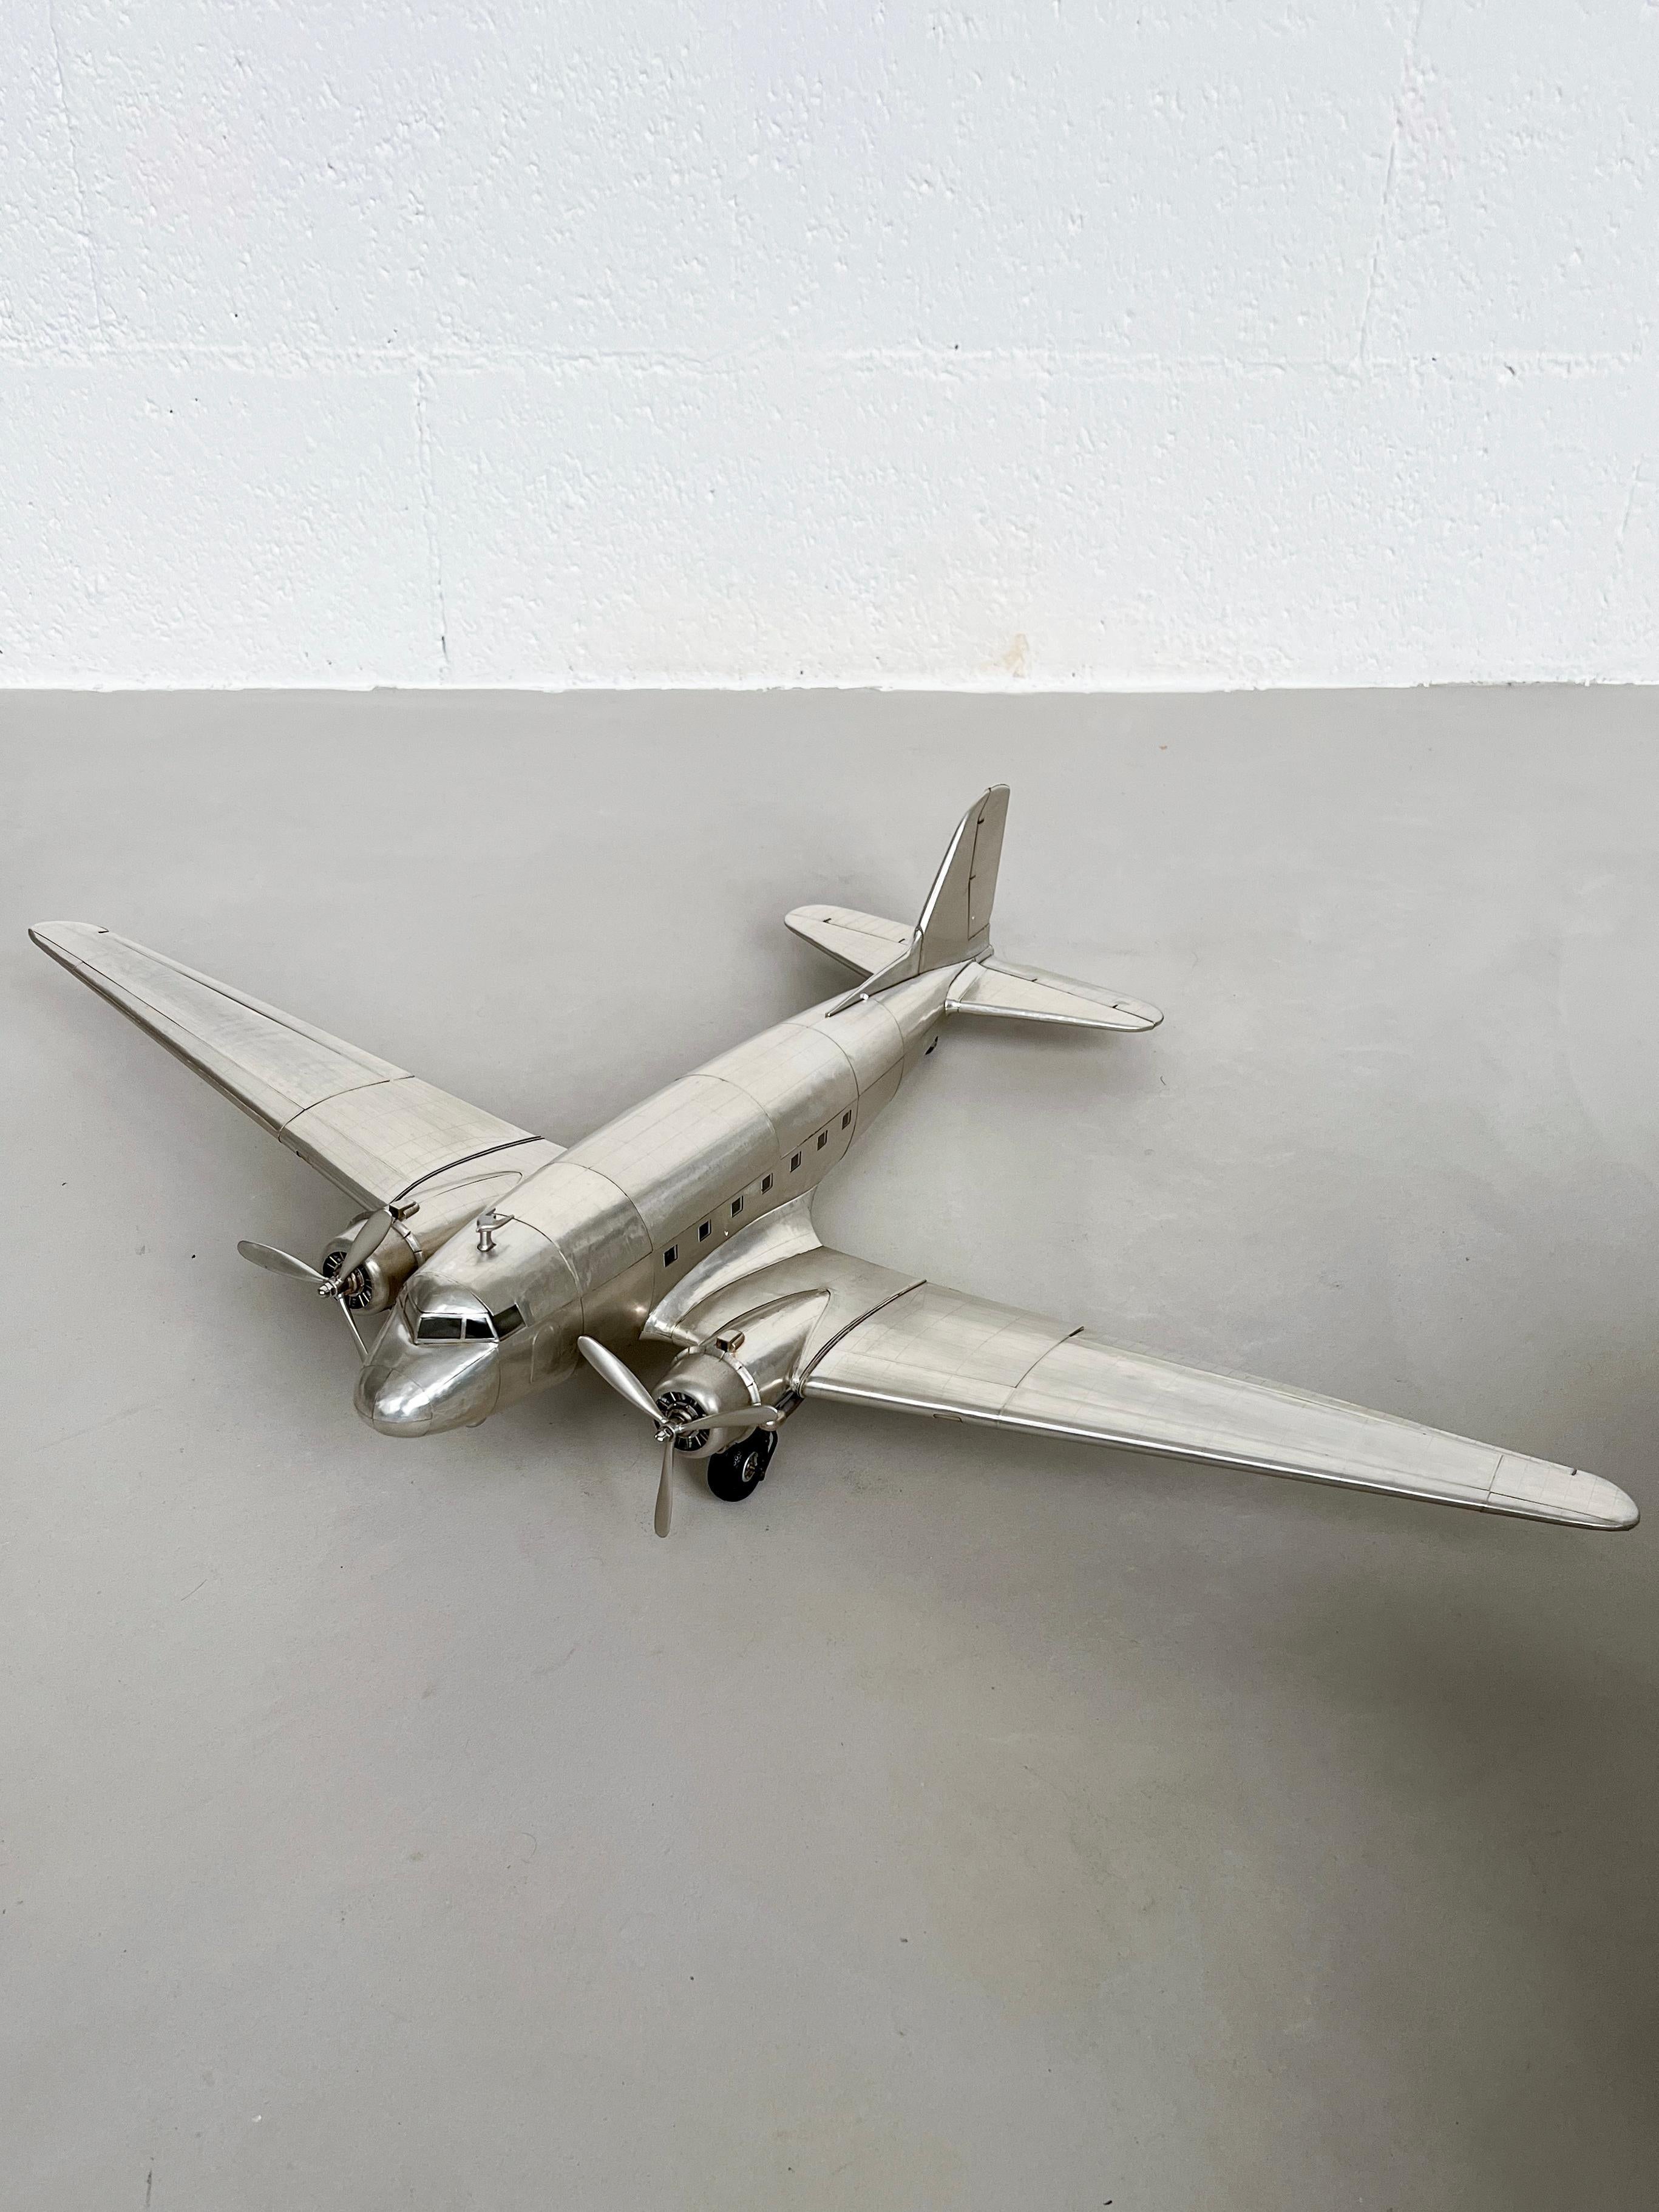 Sculpture d'avion - Décoration d'étagère

Décorez votre salon, votre chambre ou votre cave avec style grâce à cette énorme maquette du Douglas DC-3 - l'avion le plus emblématique du XXe siècle, le modèle qui a jeté les bases de l'aviation